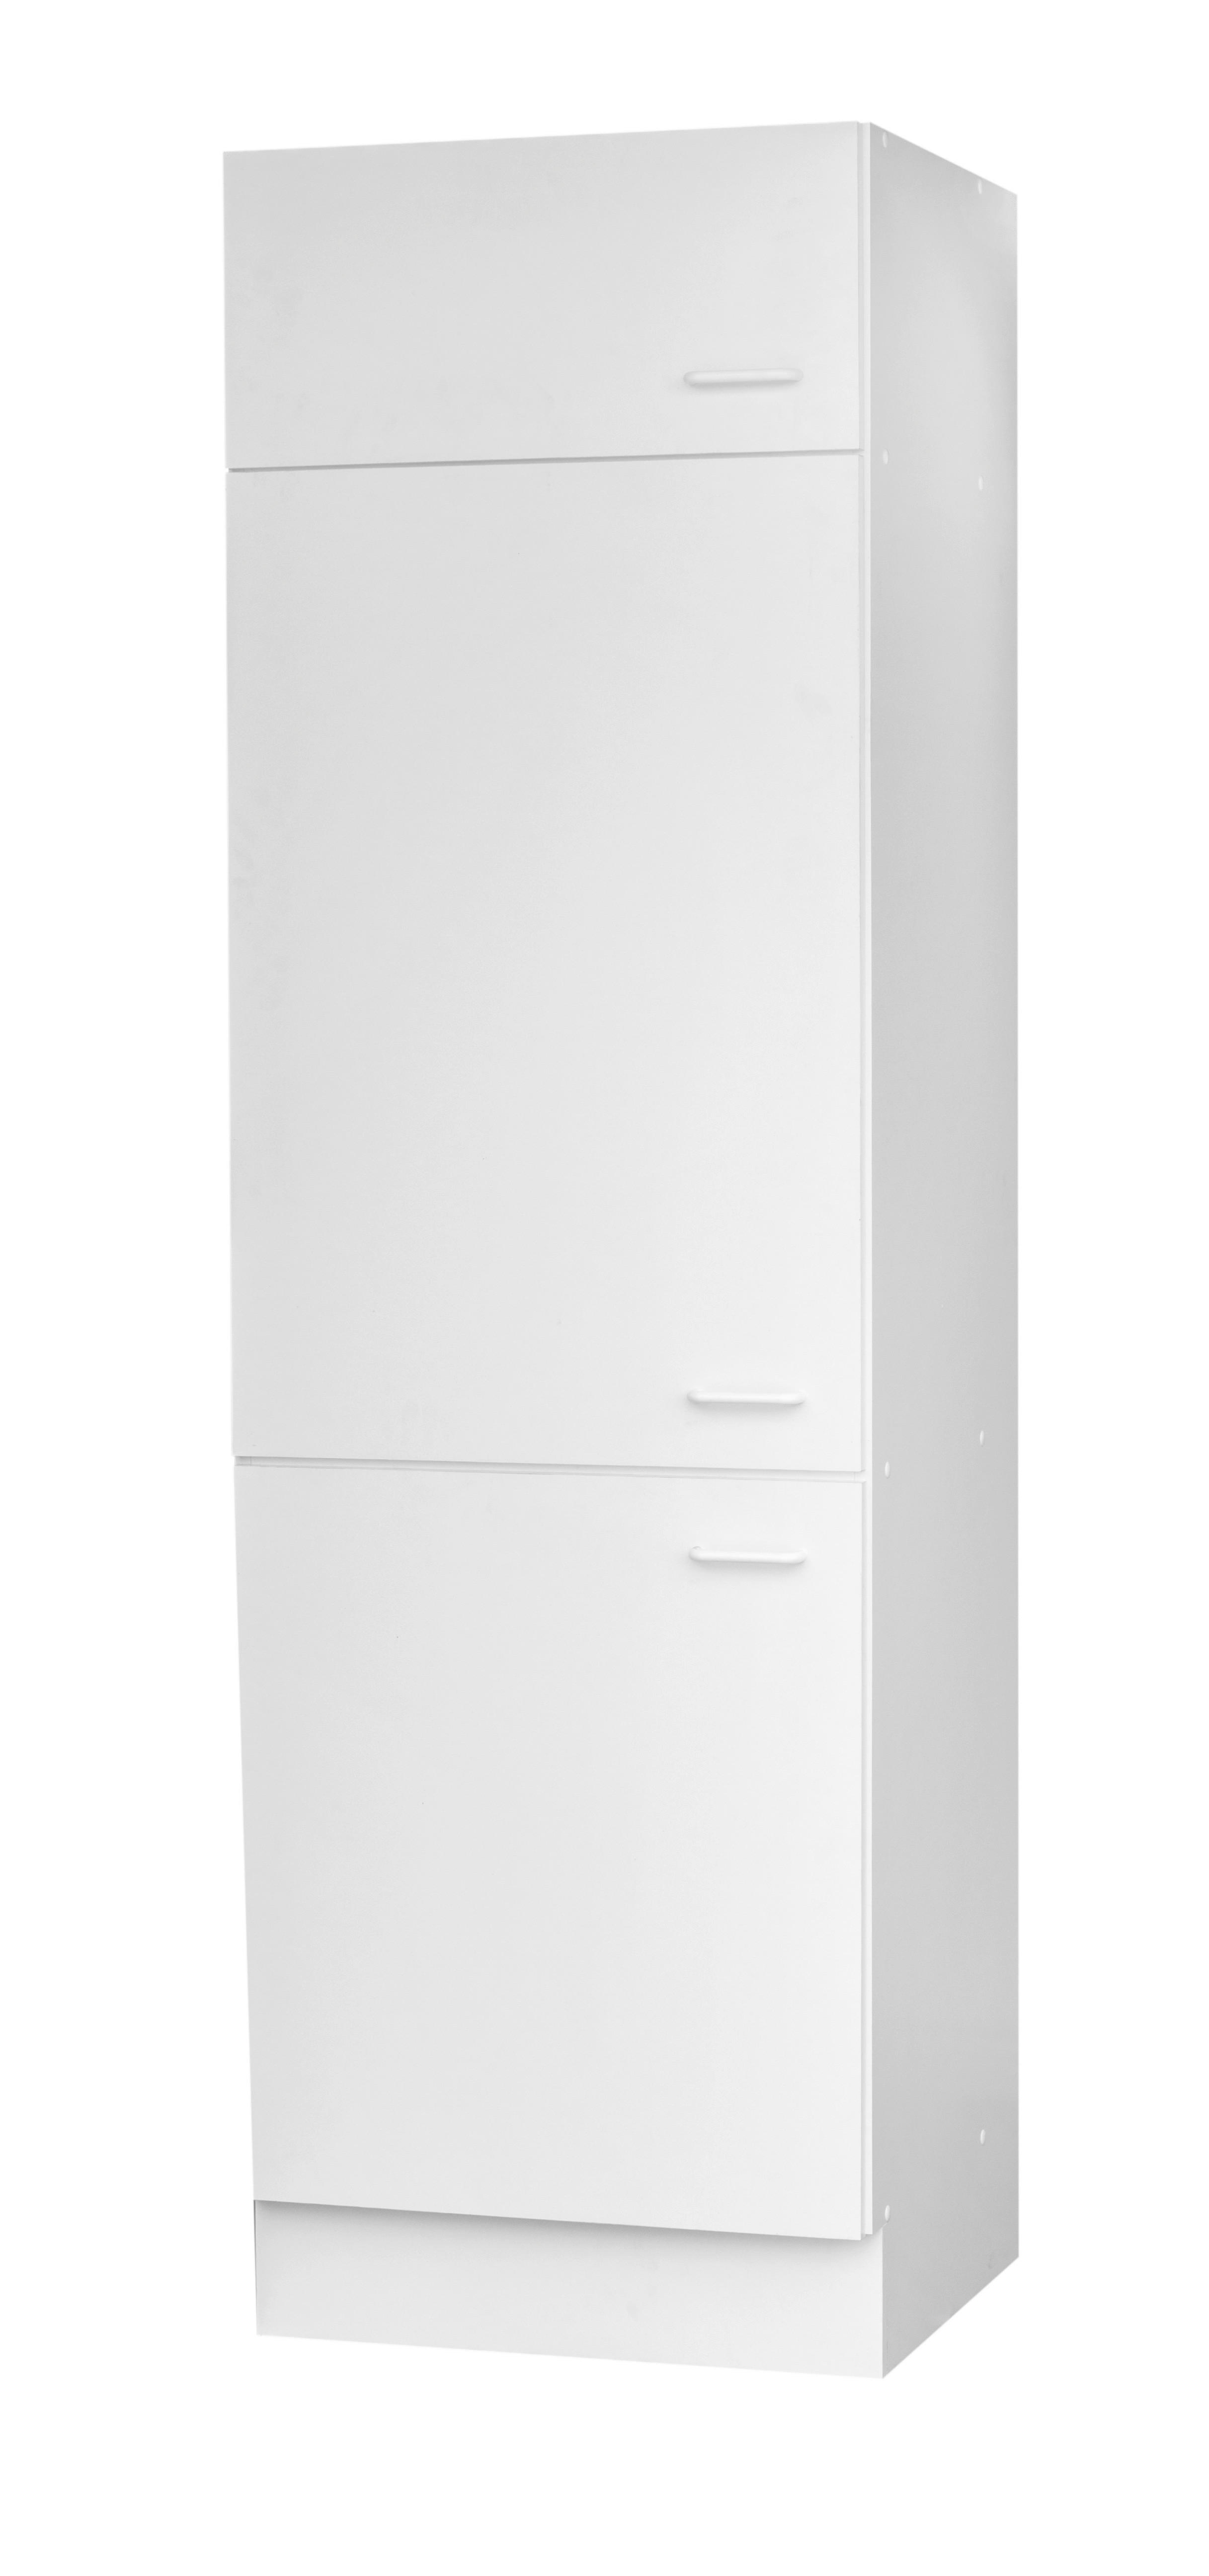 Kühlumbauschrank Top weiß matt B/H/T: ca. 60x200x60 cm Top - weiß (60,00/200,00/60,00cm)